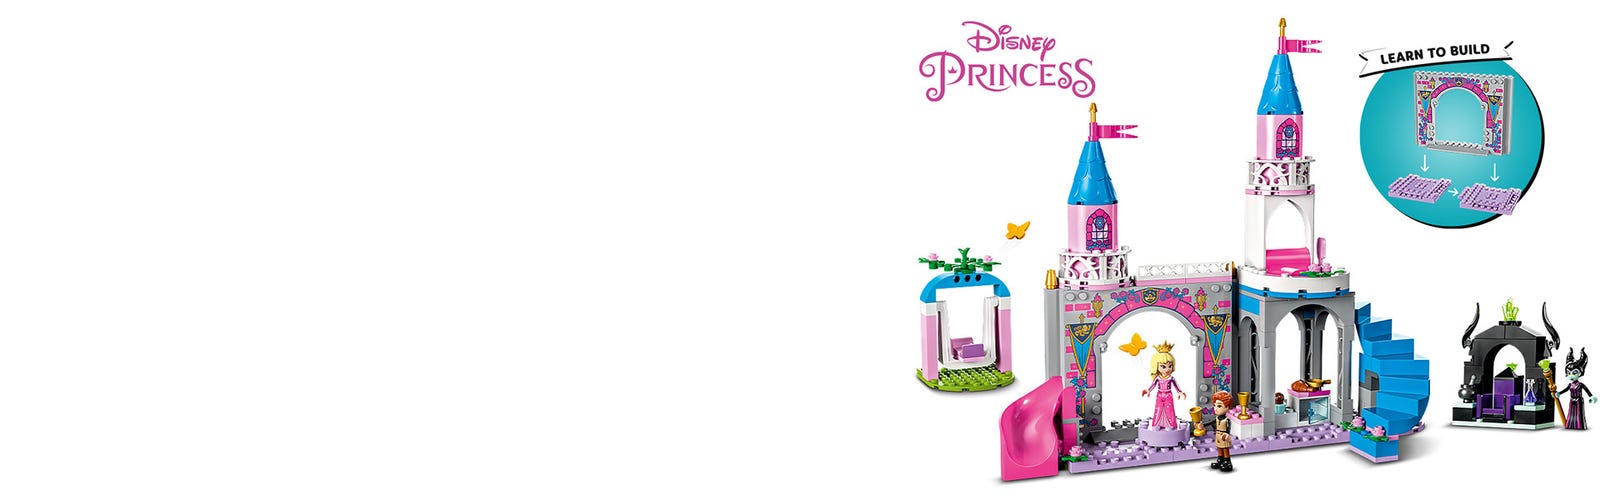 43211 Le Château D'aurore Lego® Disney Princess™ - N/A - Kiabi